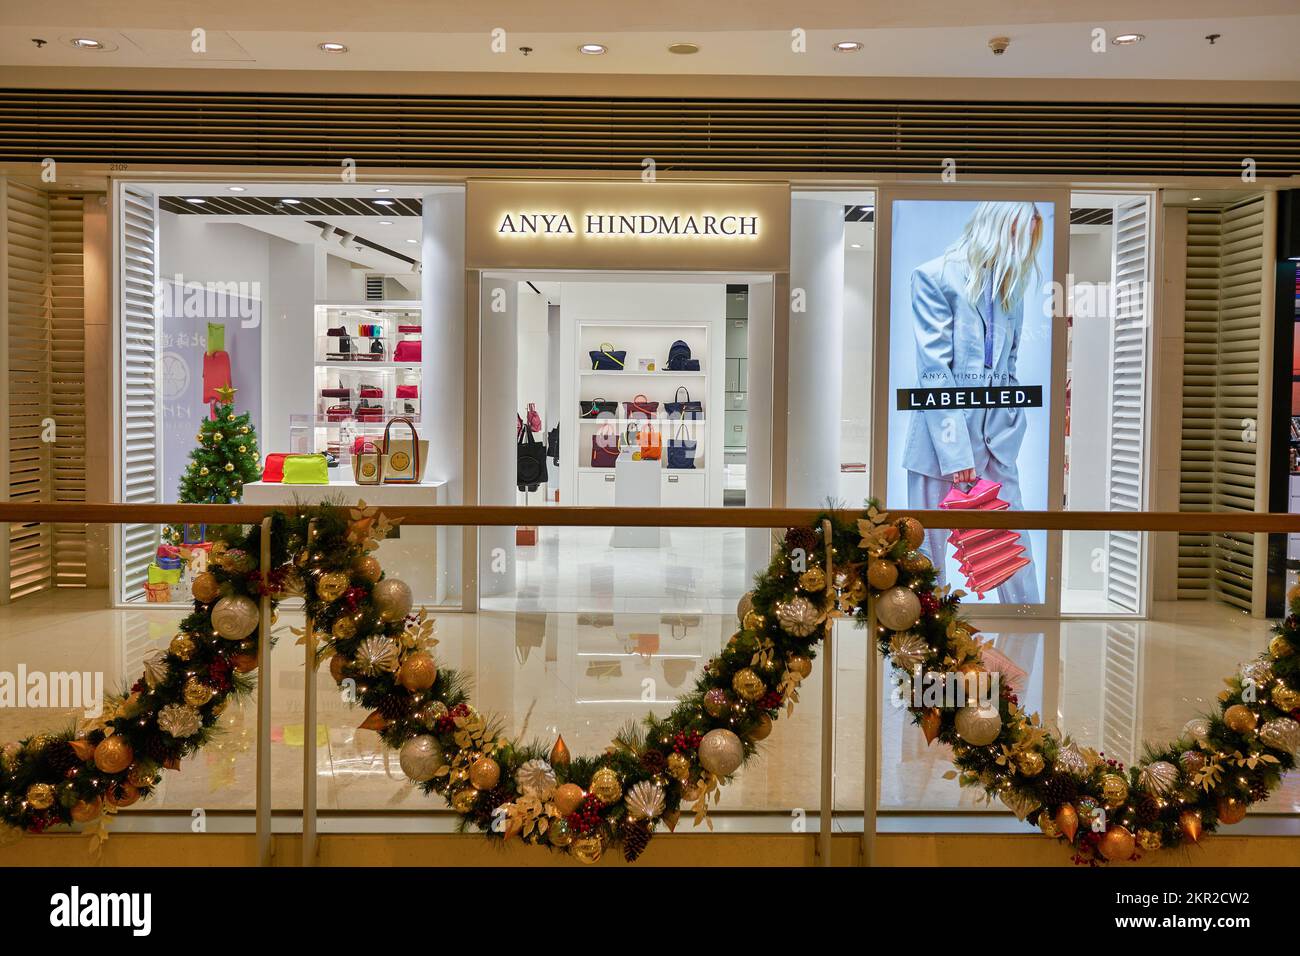 HONG KONG - CIRCA DECEMBER, 2019: entrance to Anya Hindmarch store at Elements shopping mall in Hong Kong. Stock Photo